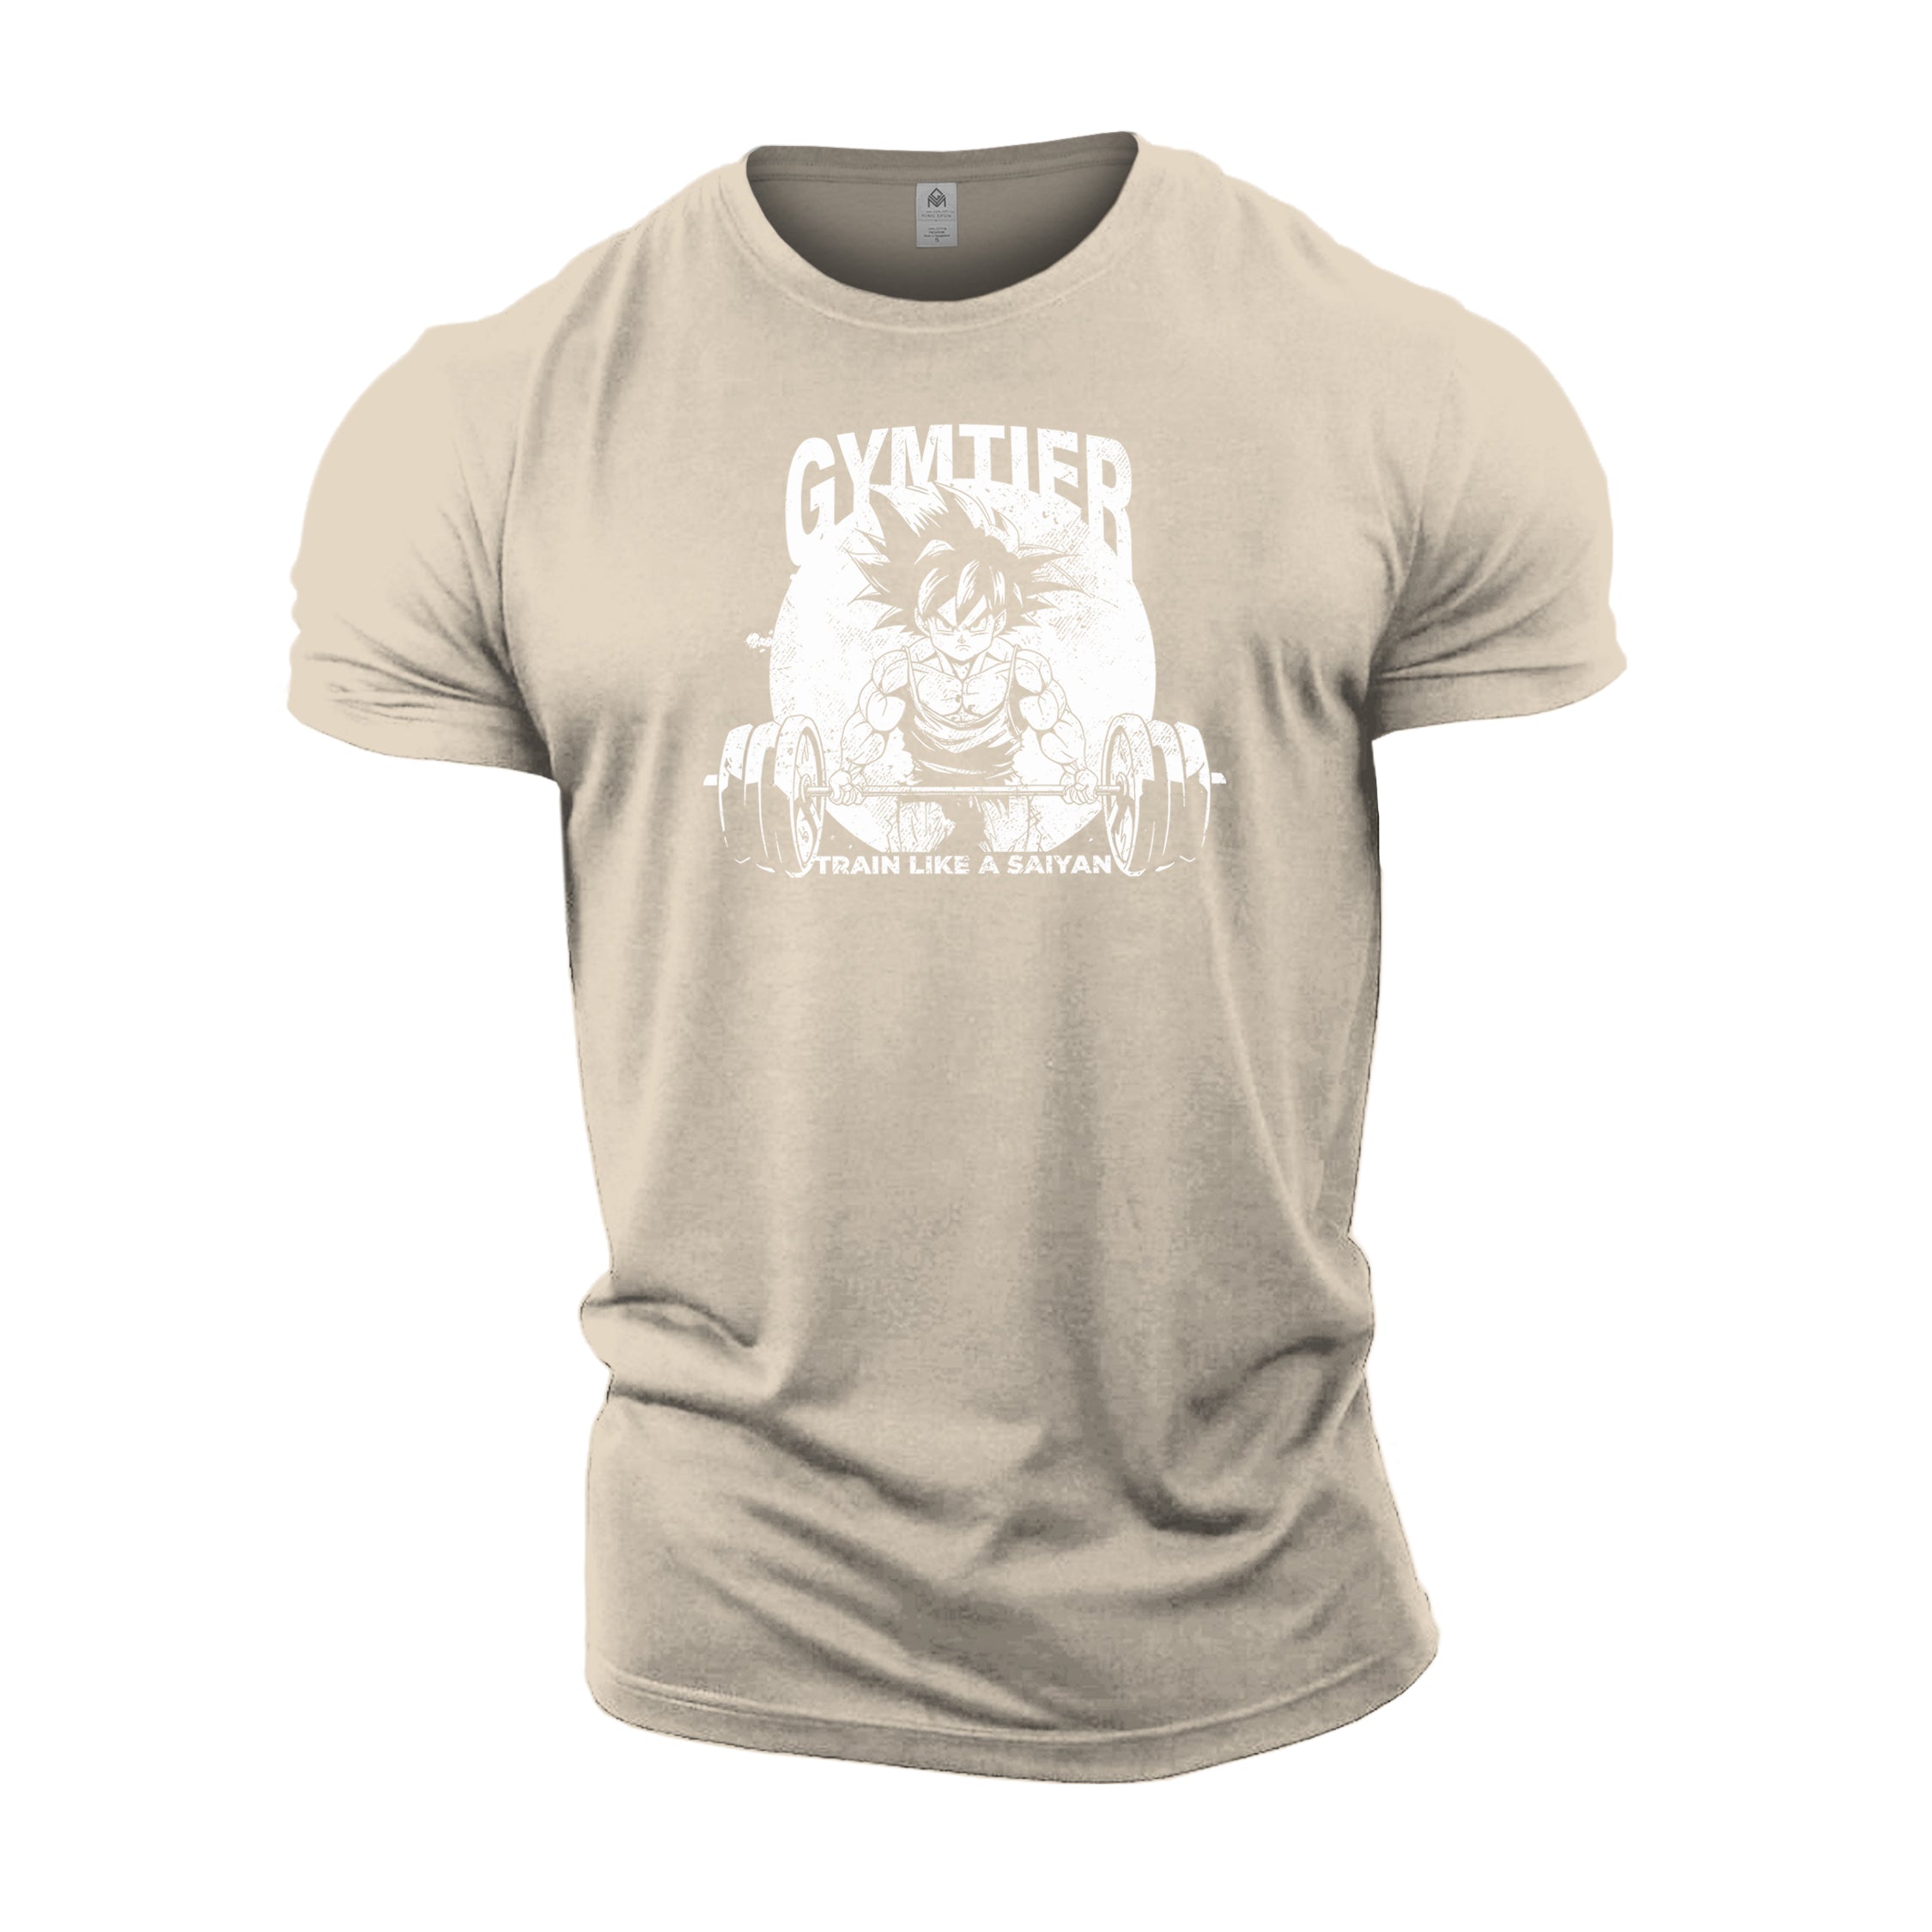 Train Like A Saiyan - Gym T-Shirt